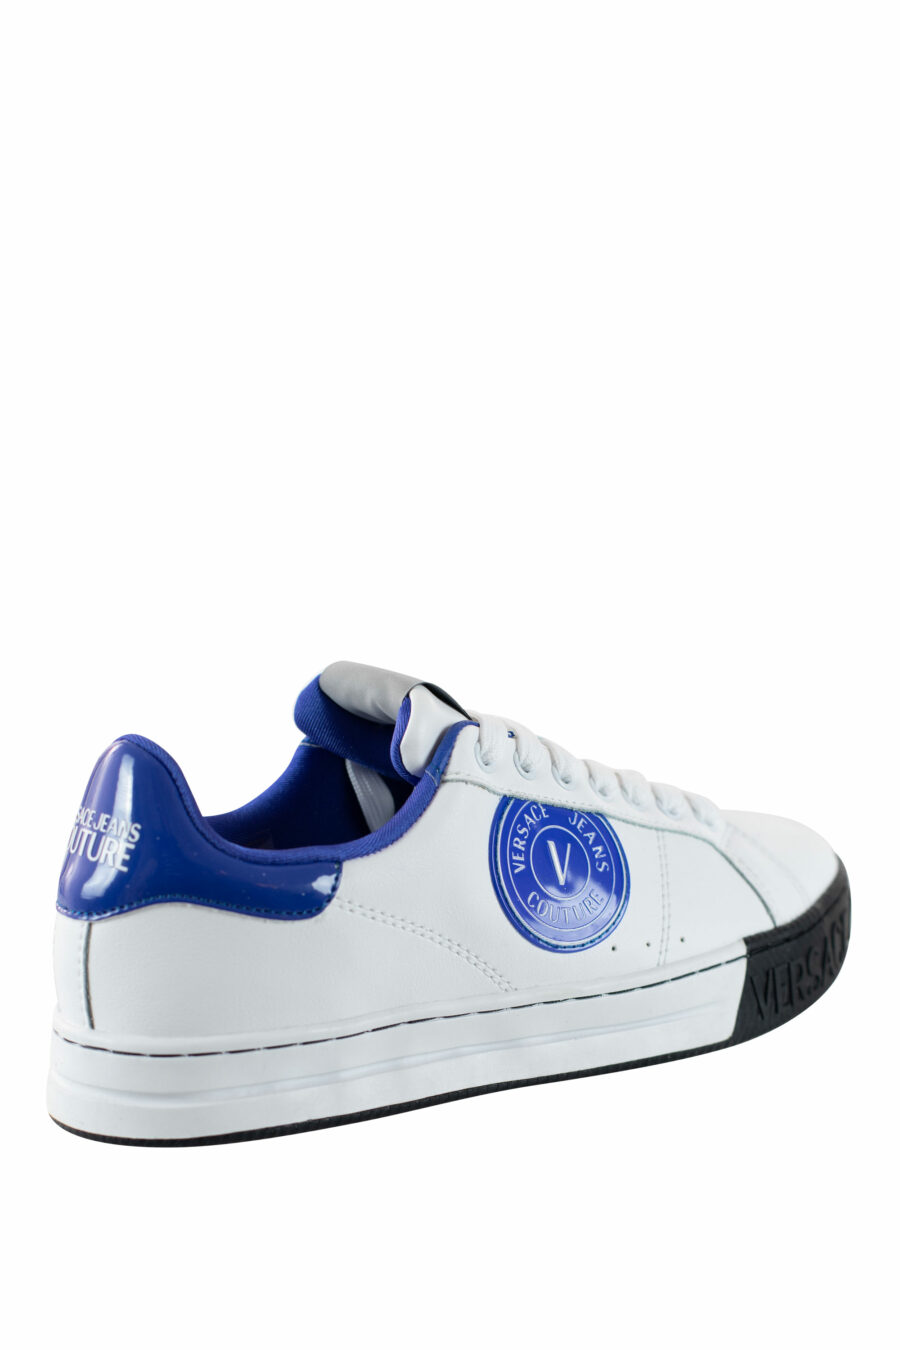 Weiße Turnschuhe mit blauem und rundem Logo - IMG 4503